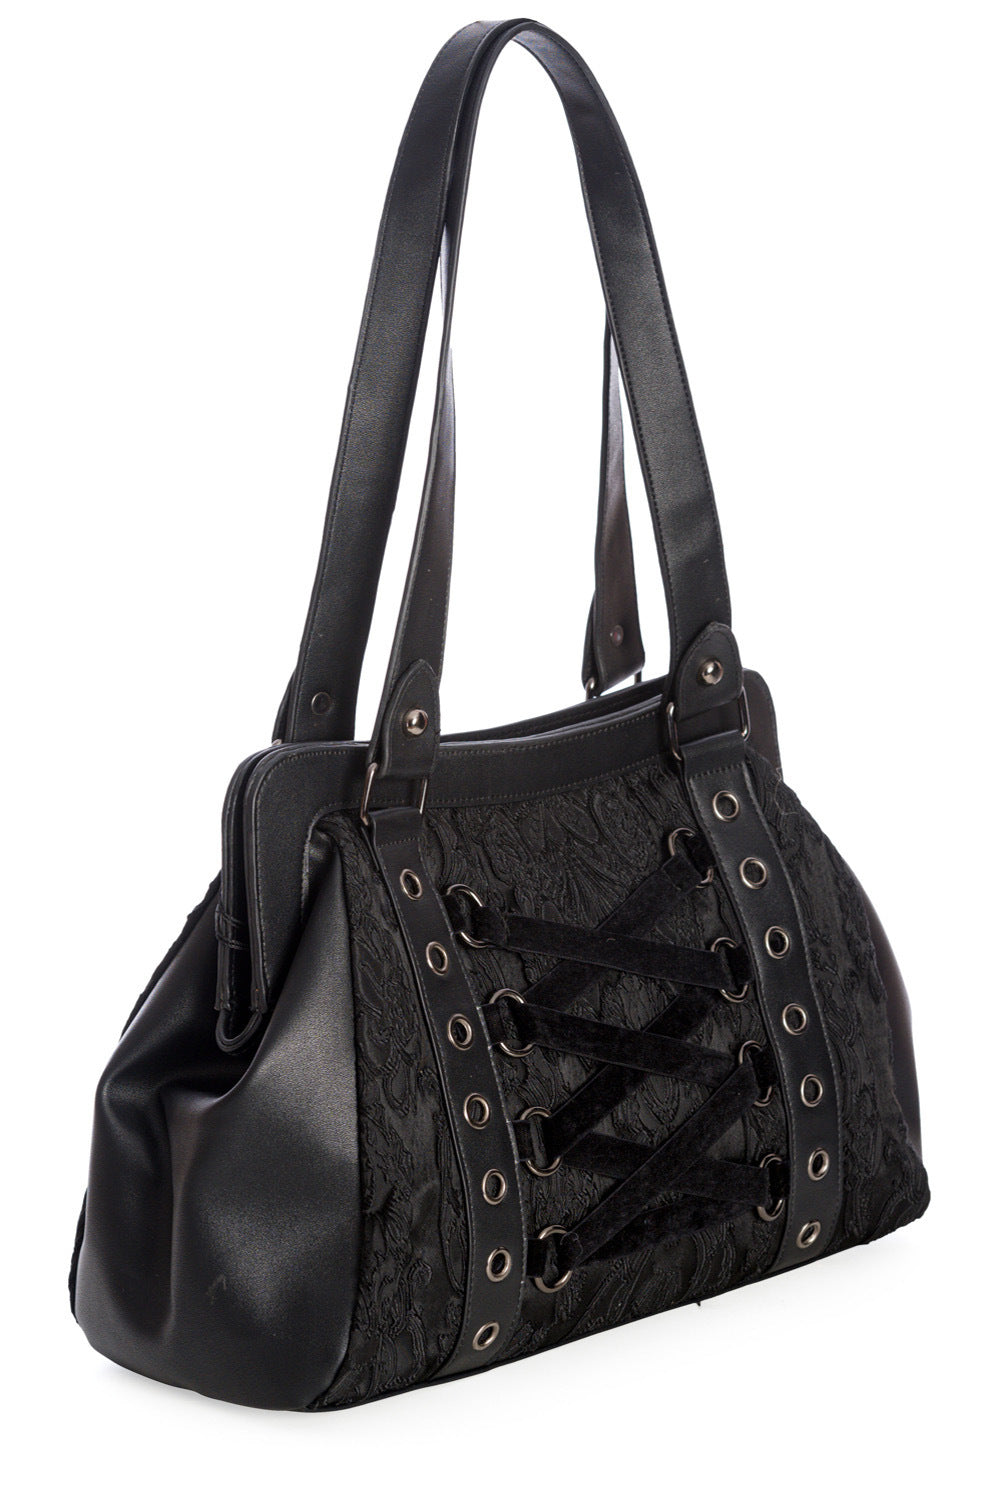 Schwarze Handtasche ANEMONE HANDBAG Black mit Brokatmuster und dekorativer Samtschnürung von Banned